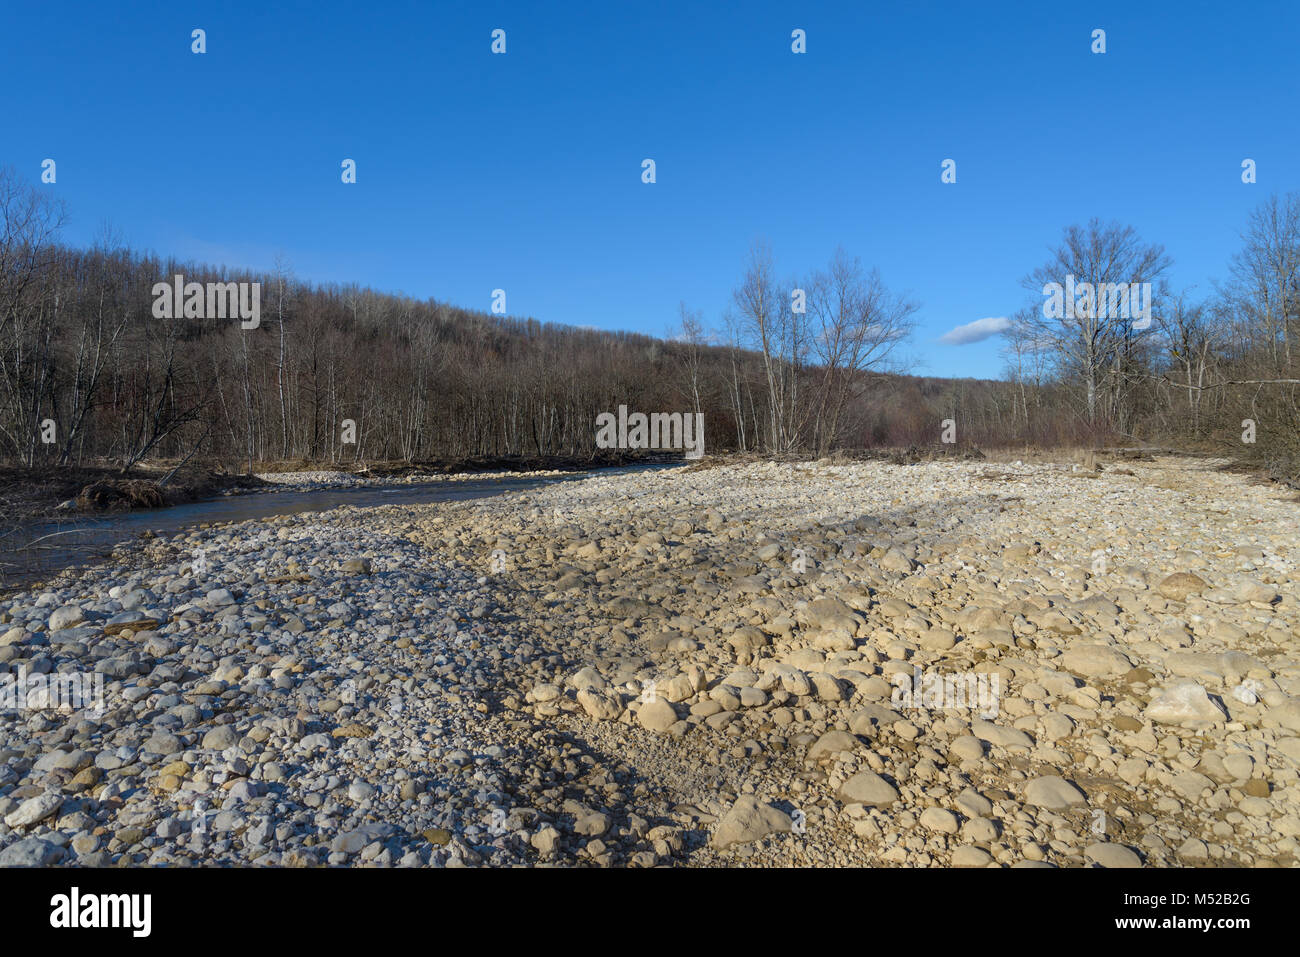 Die Küste des Berg River, mit Steinen übersät. Stockfoto